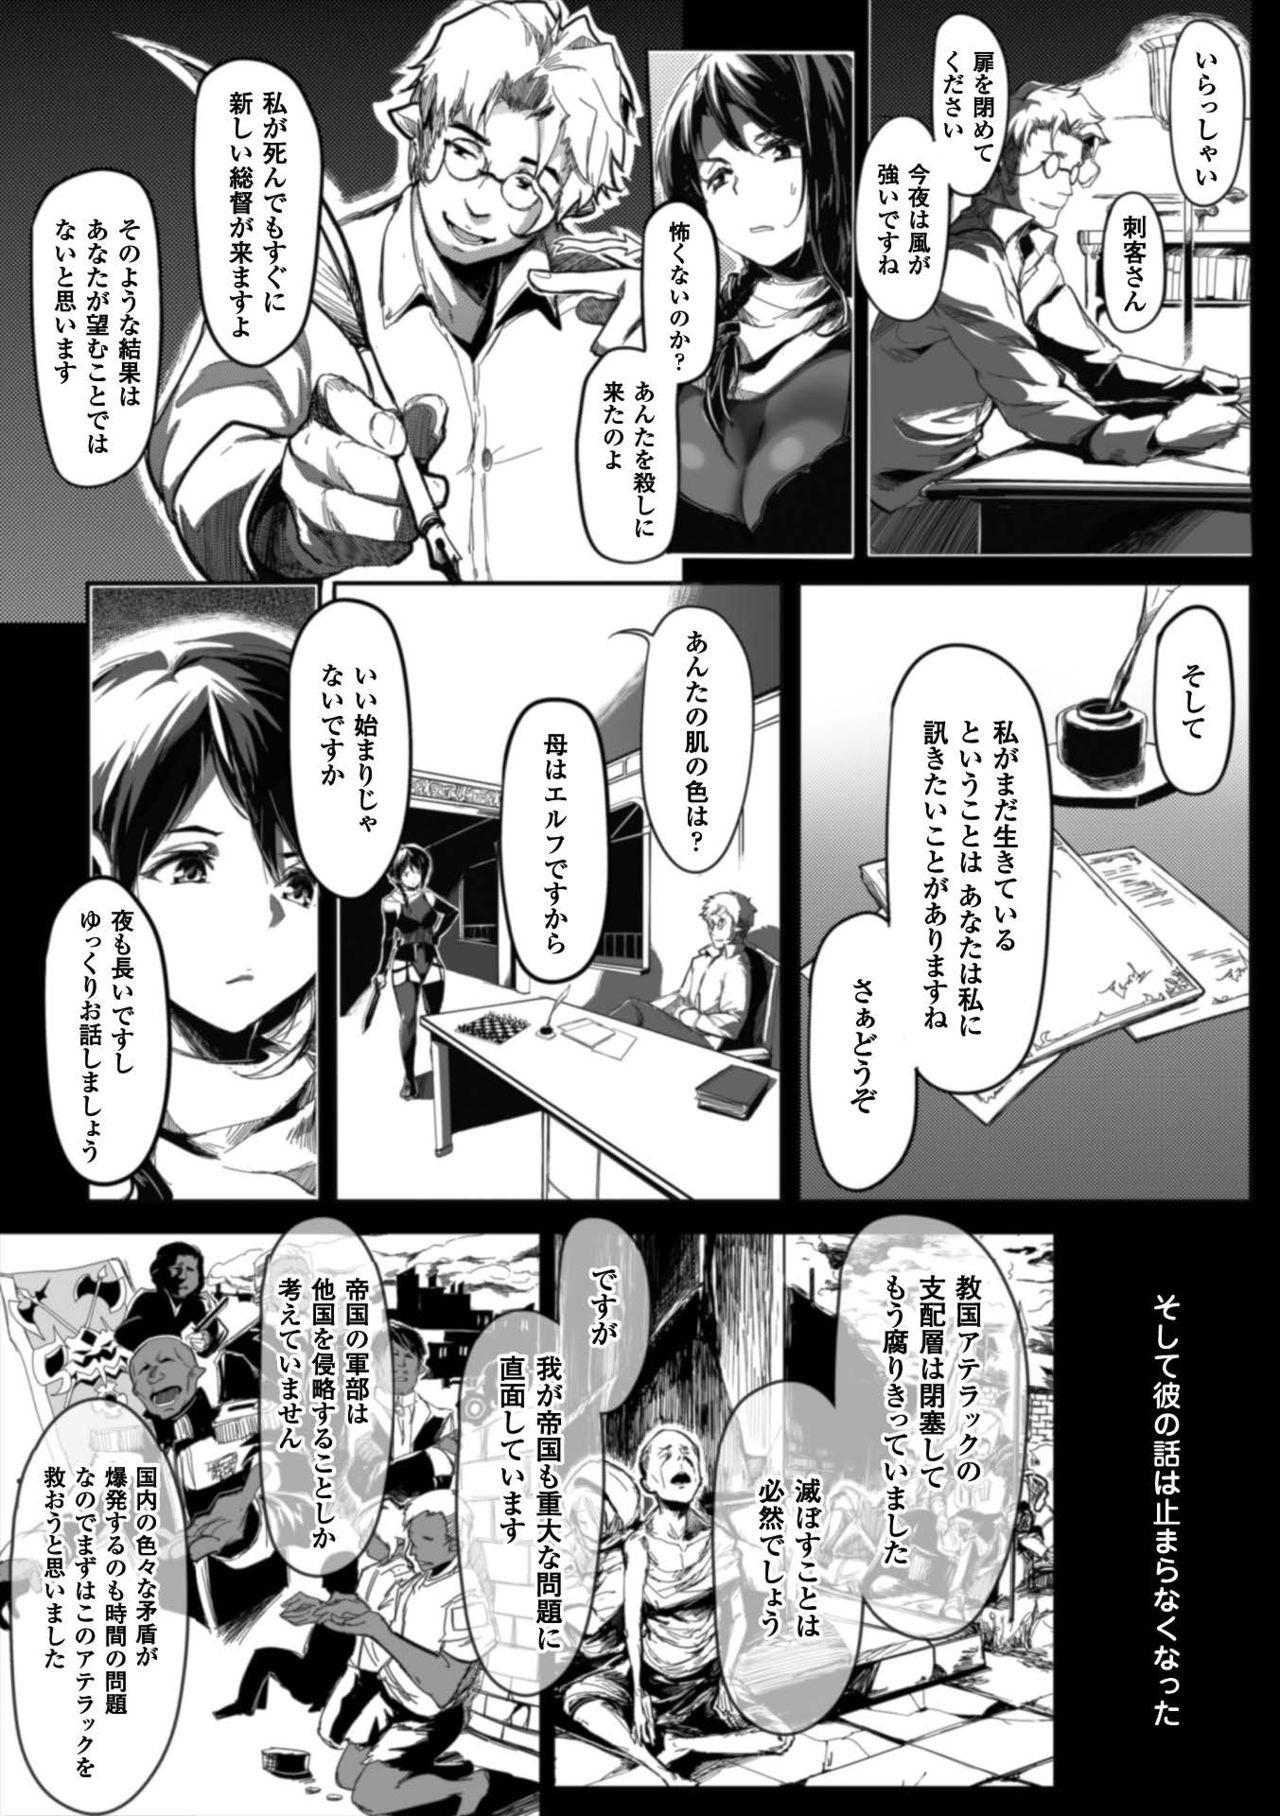 Seigi no Heroine Kangoku File Vol. 7 61